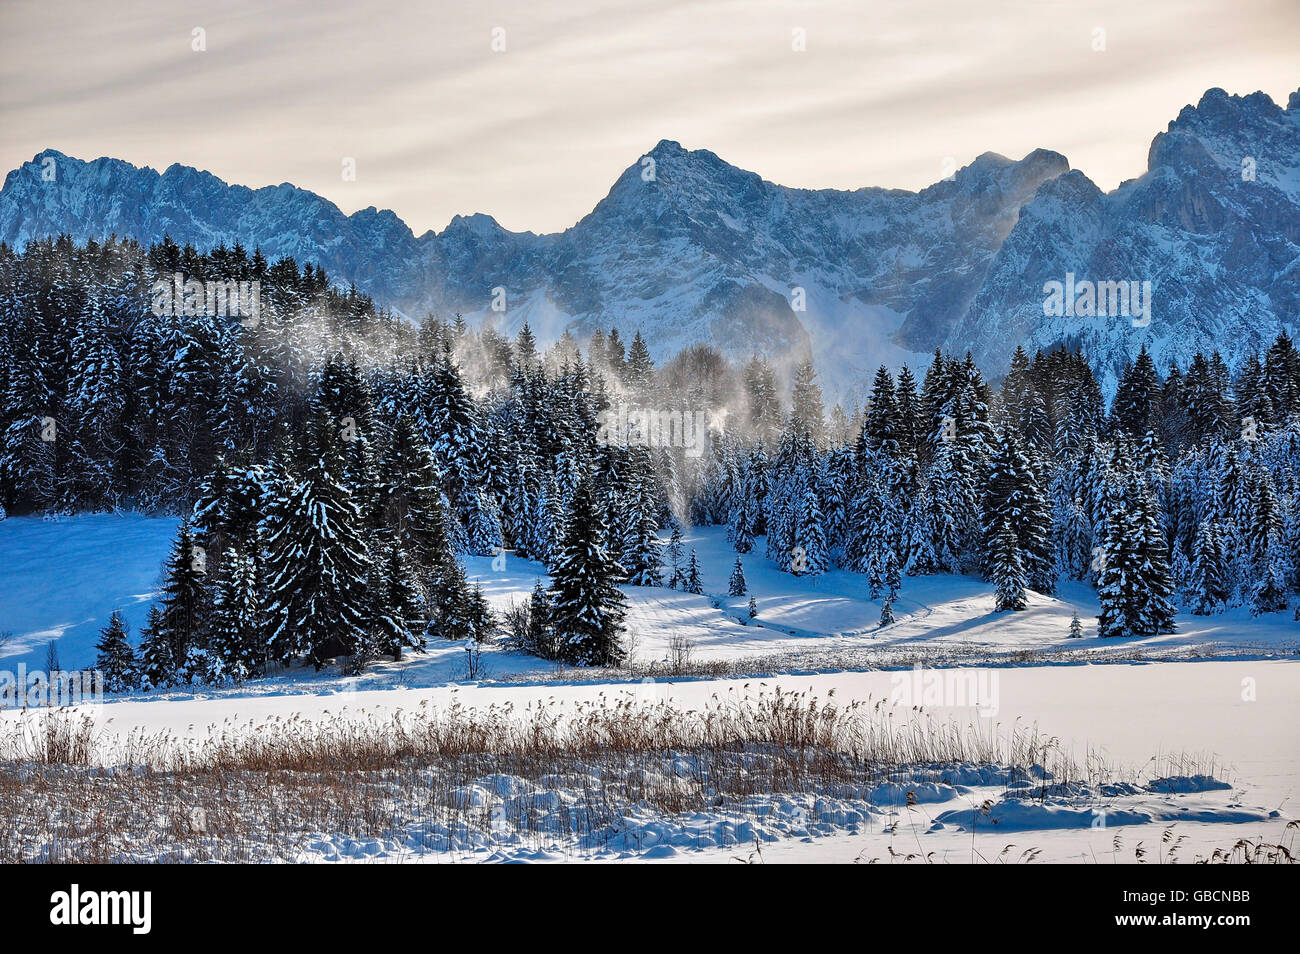 Karwendelgebirge, Schneesturm, Bayern, Deutschland Banque D'Images